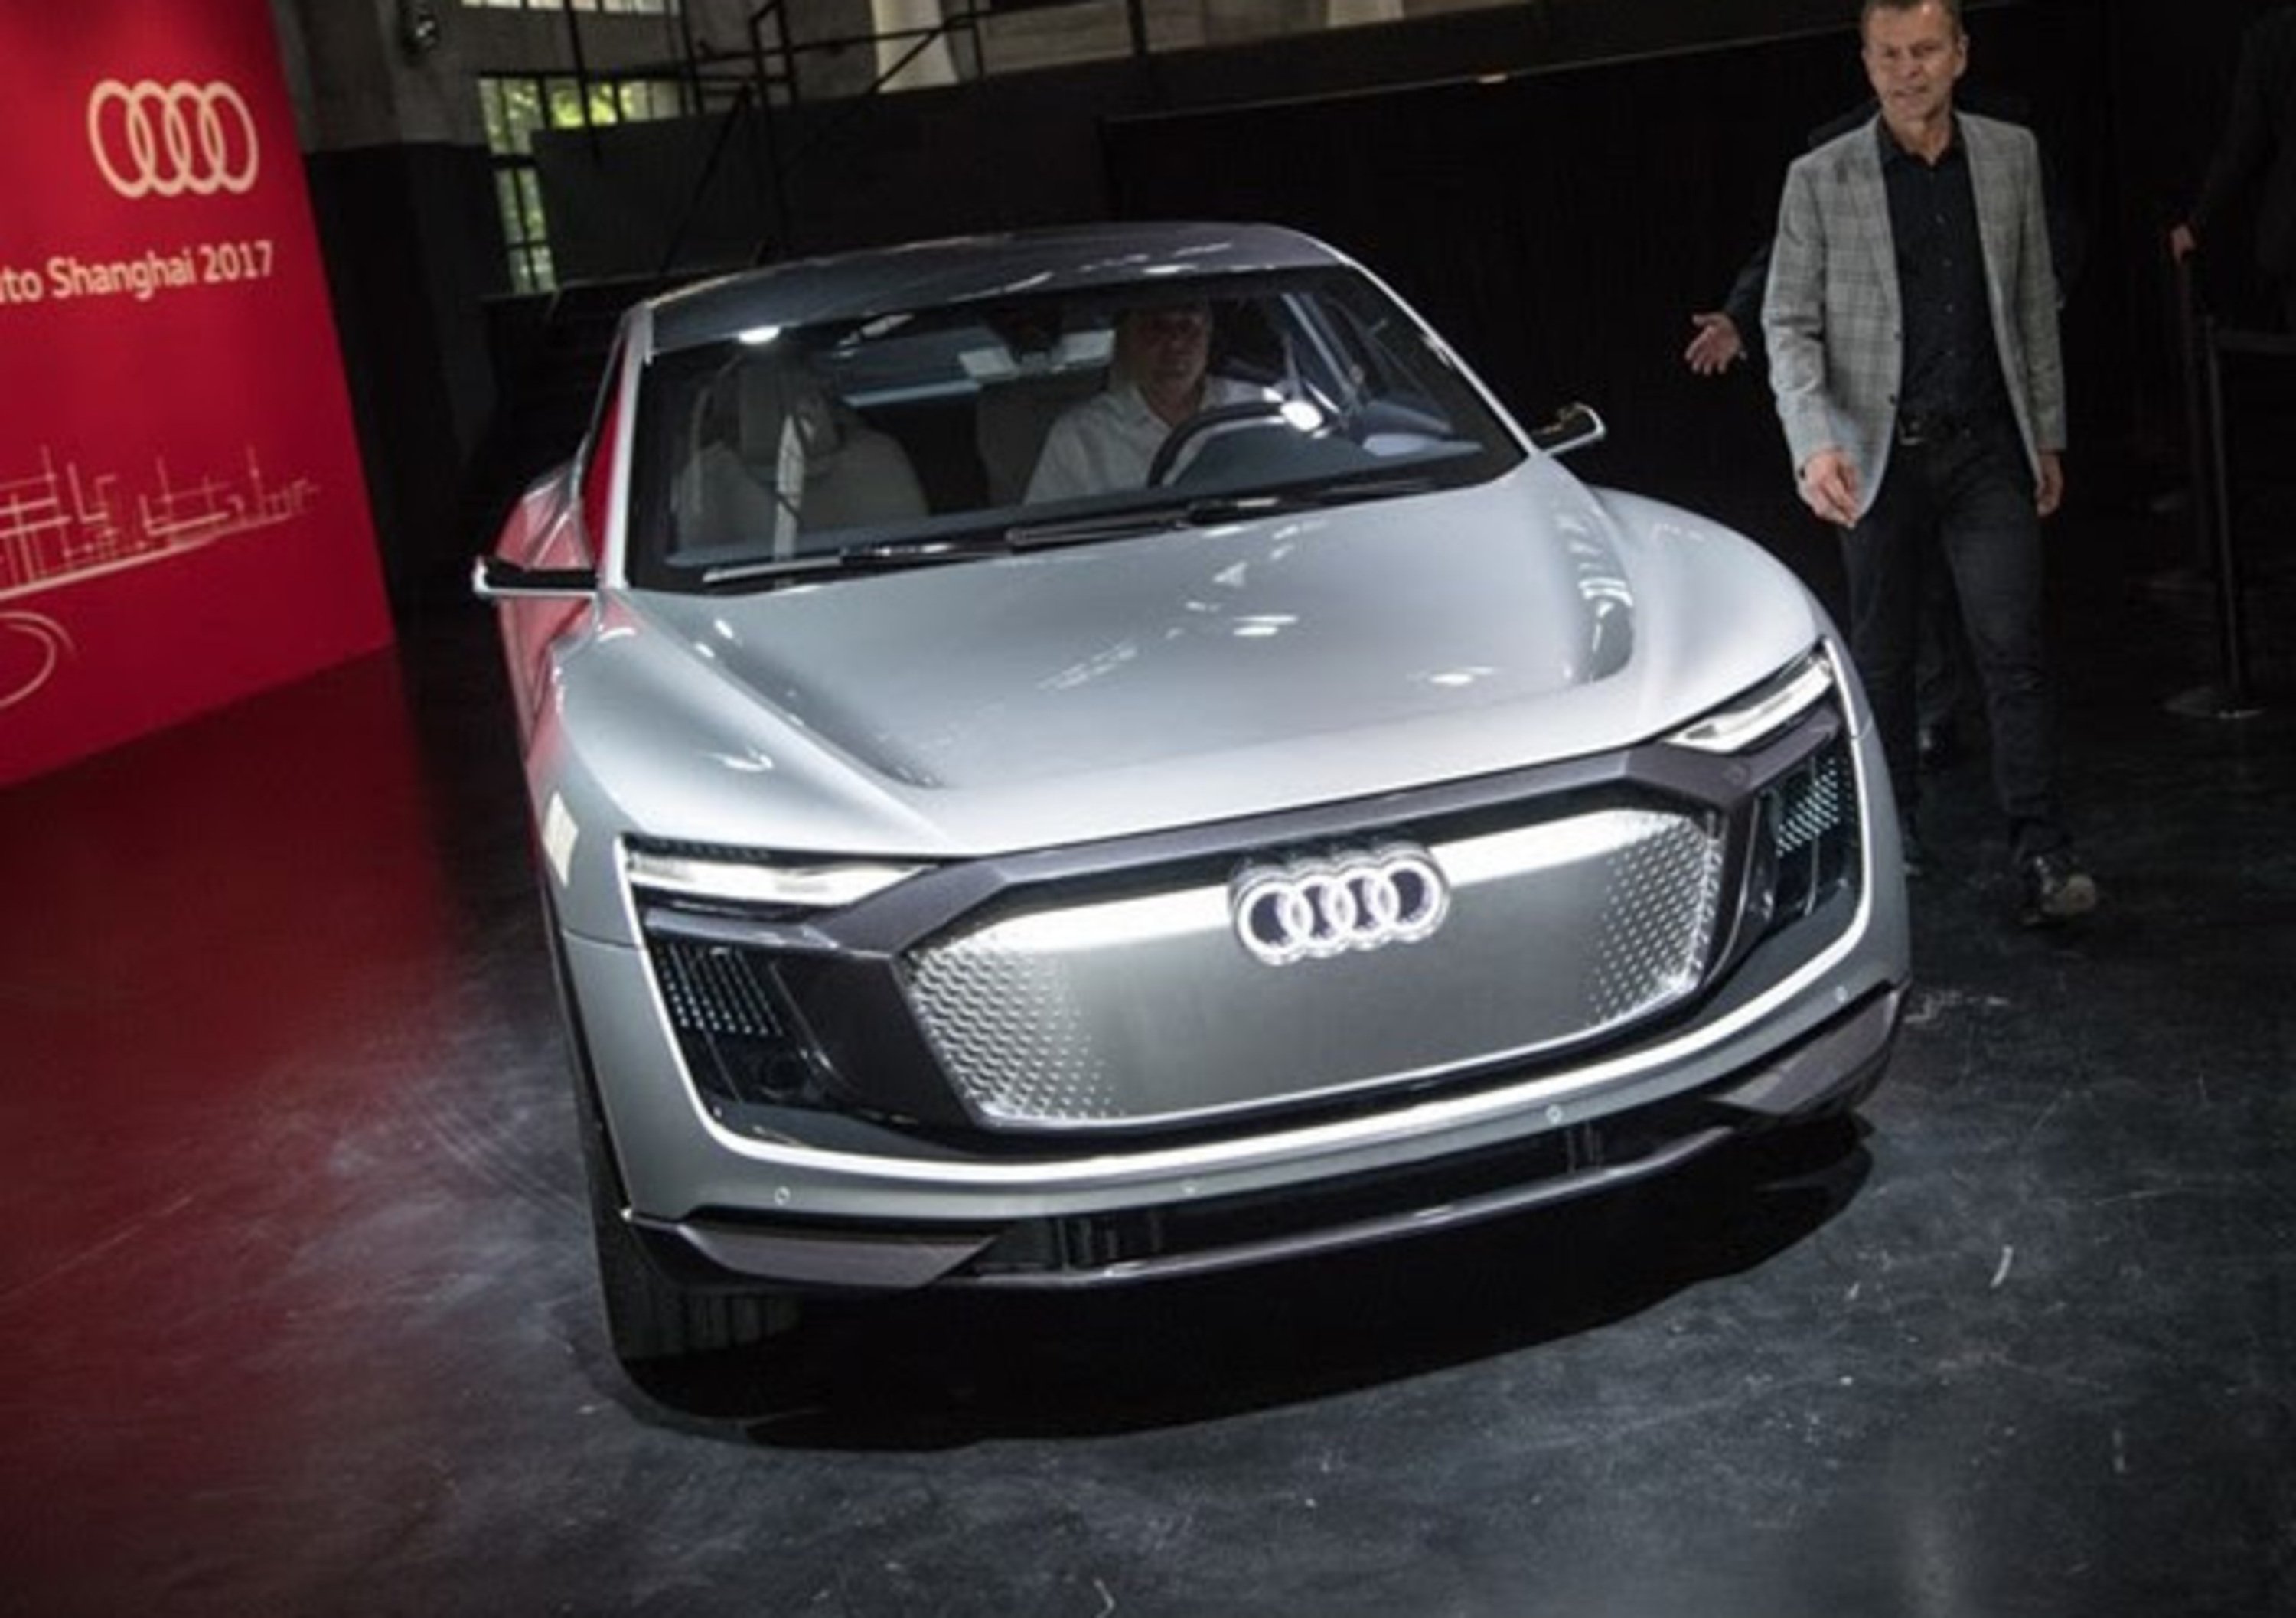 Audi investe nei progetti elettrici